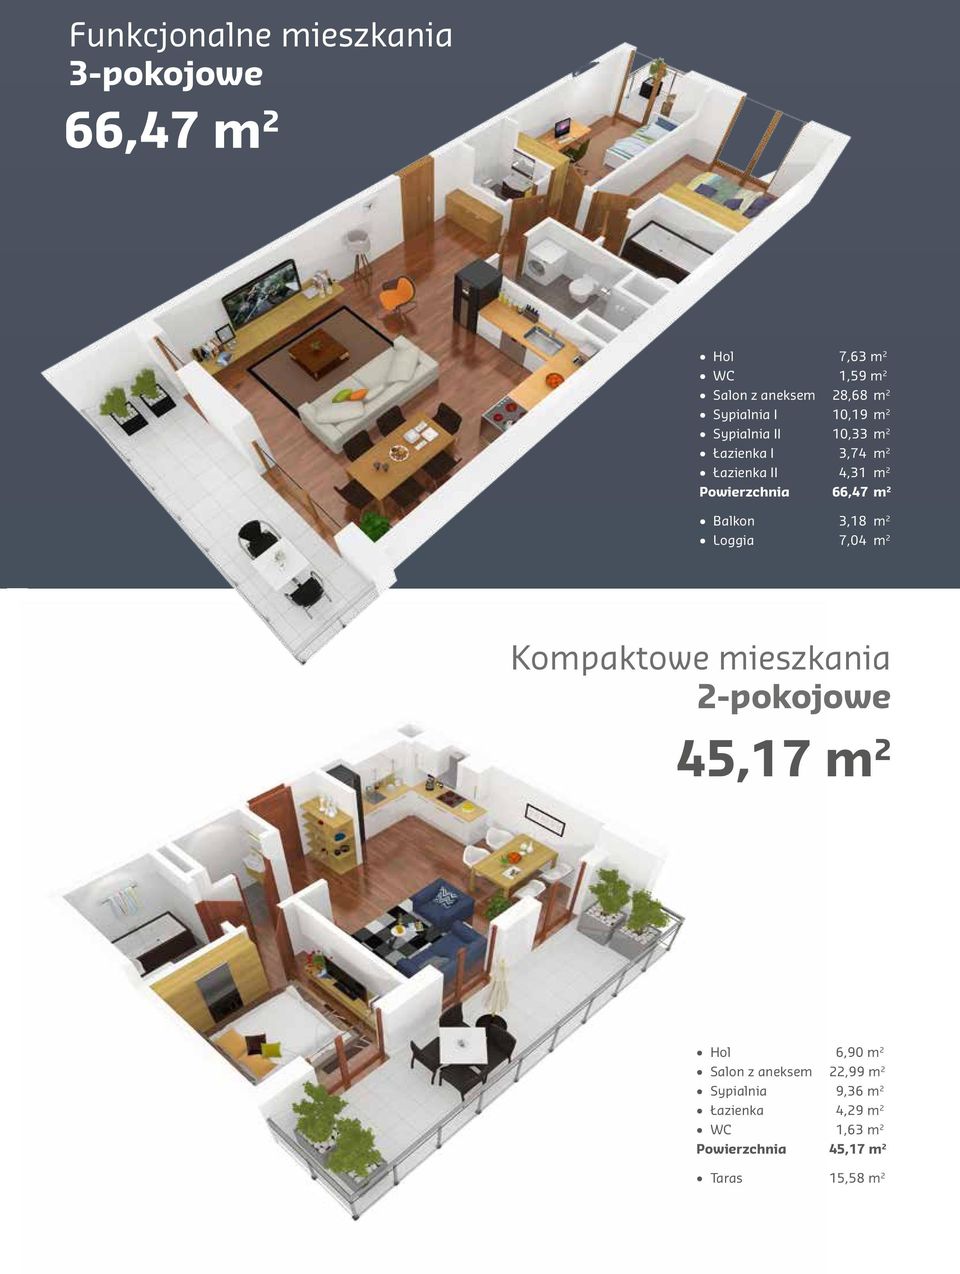 66,47 m 2 Balkon 3,18 m 2 Loggia 7,04 m 2 Kompaktowe mieszkania 2-pokojowe 45,17 m 2 Hol 6,90 m 2